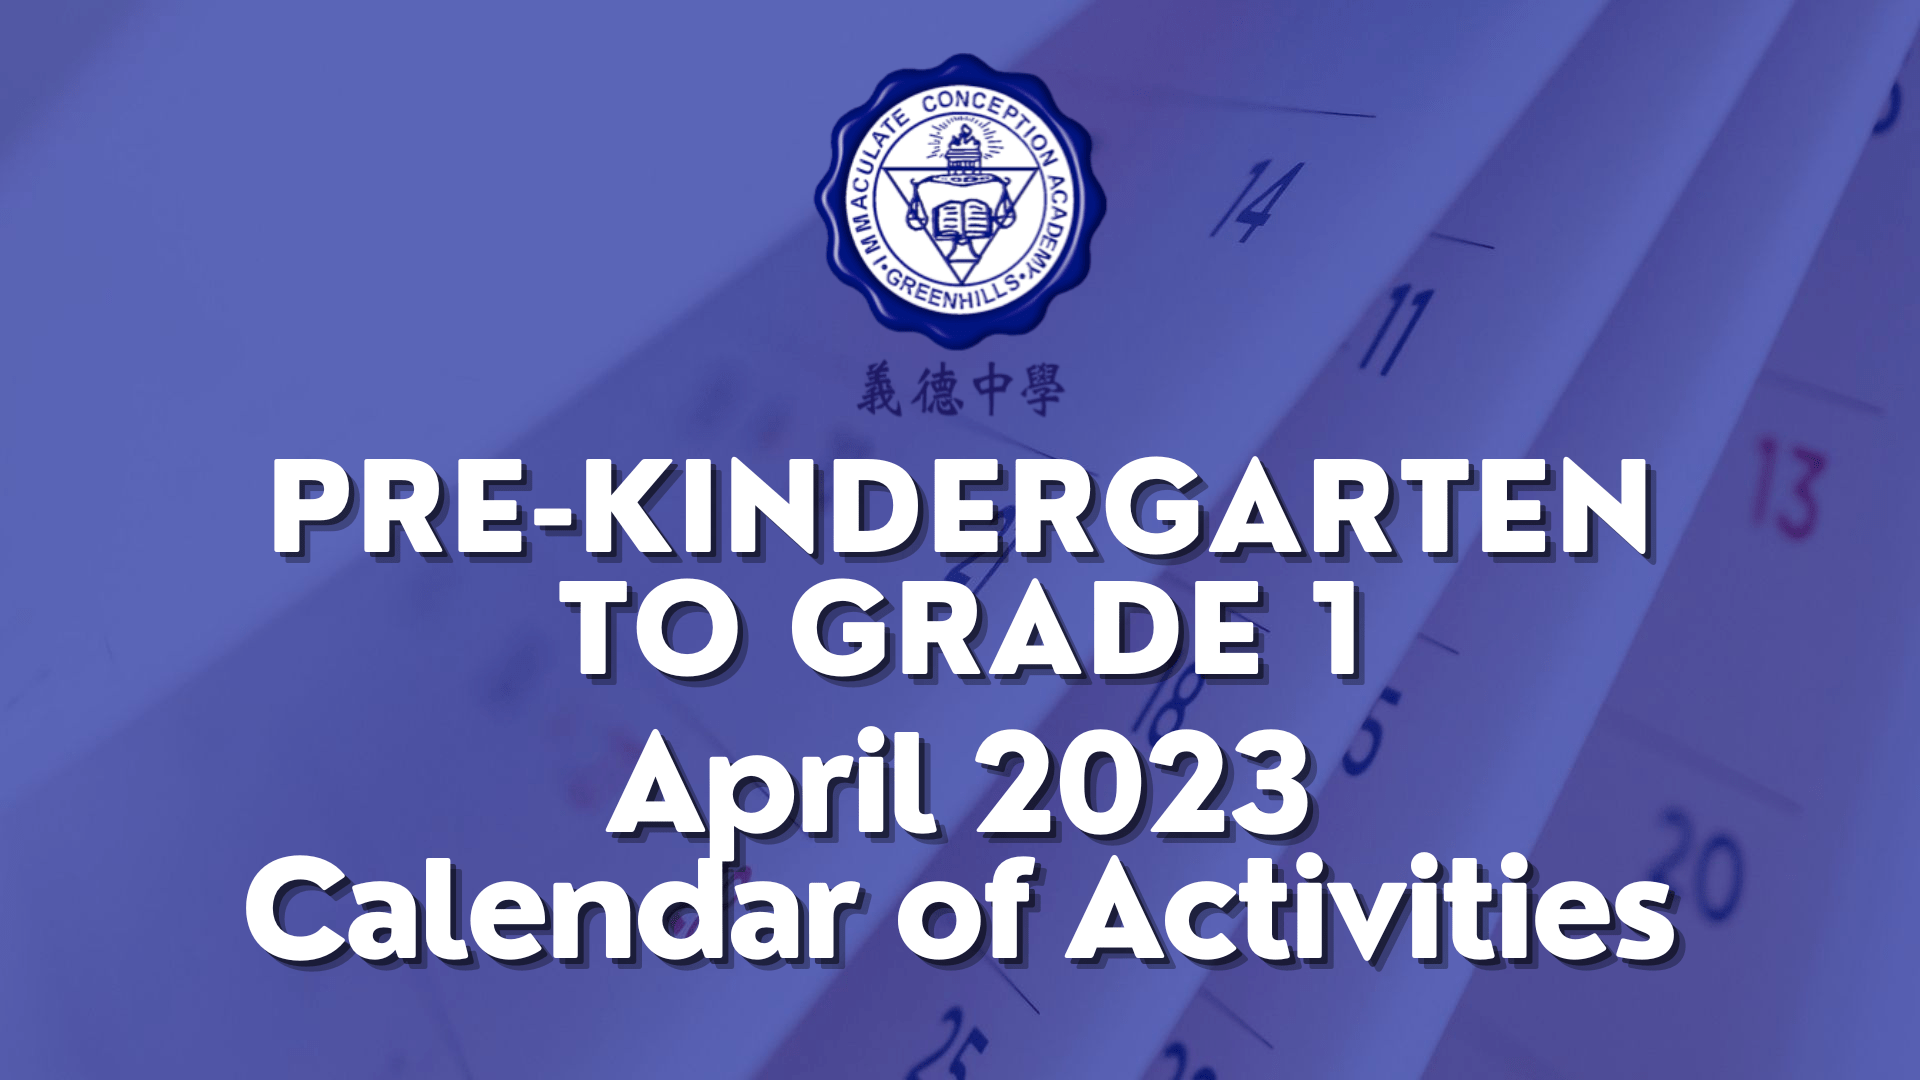 Pre-Kindergarten to Grade 1 Calendar of Activities for April 2023